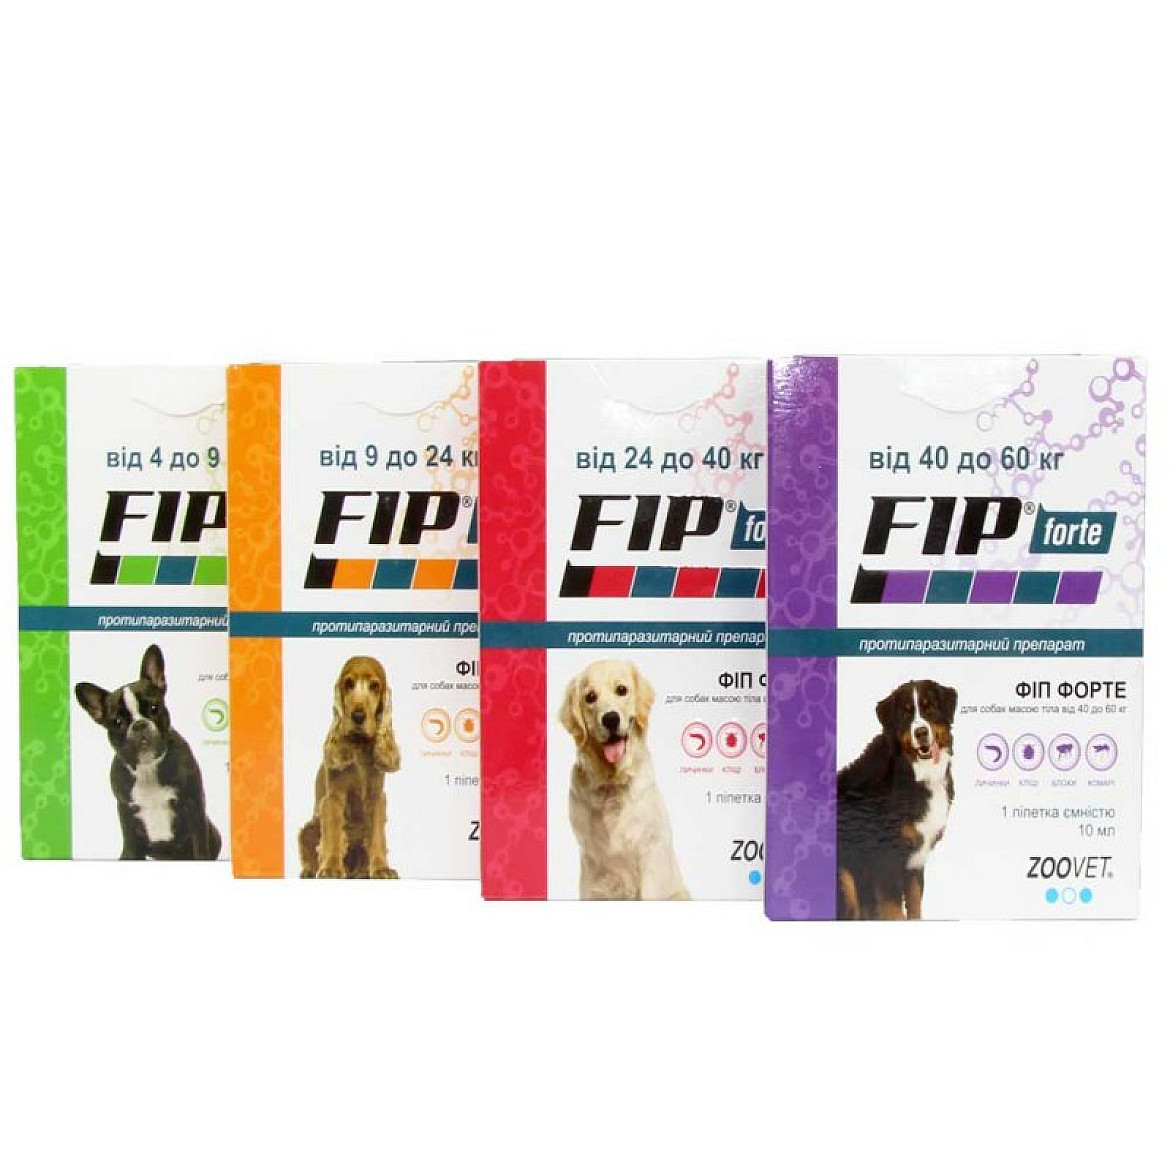 Fip Forte (Фип Форте) капли от блох и клещей для собак, 60 кг